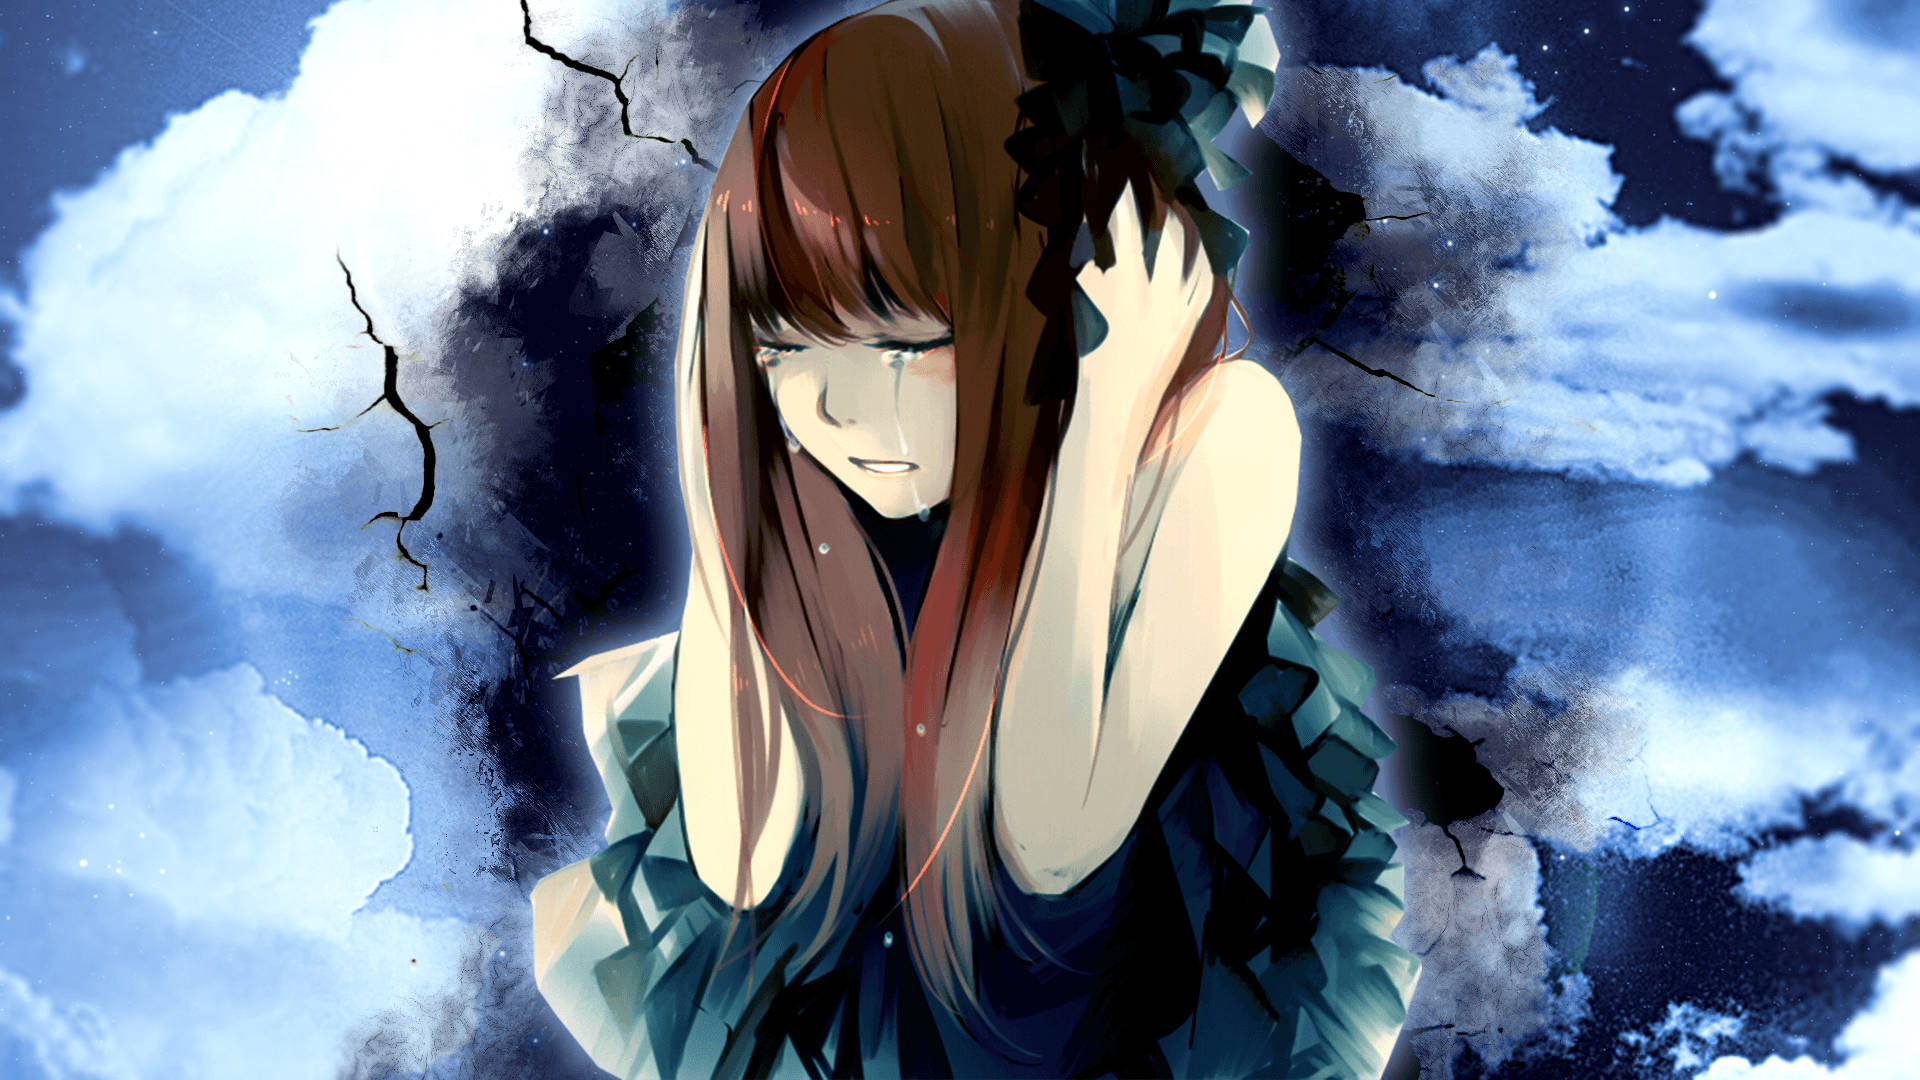 Sad Anime Girl Stressed Aesthetic Wallpaper